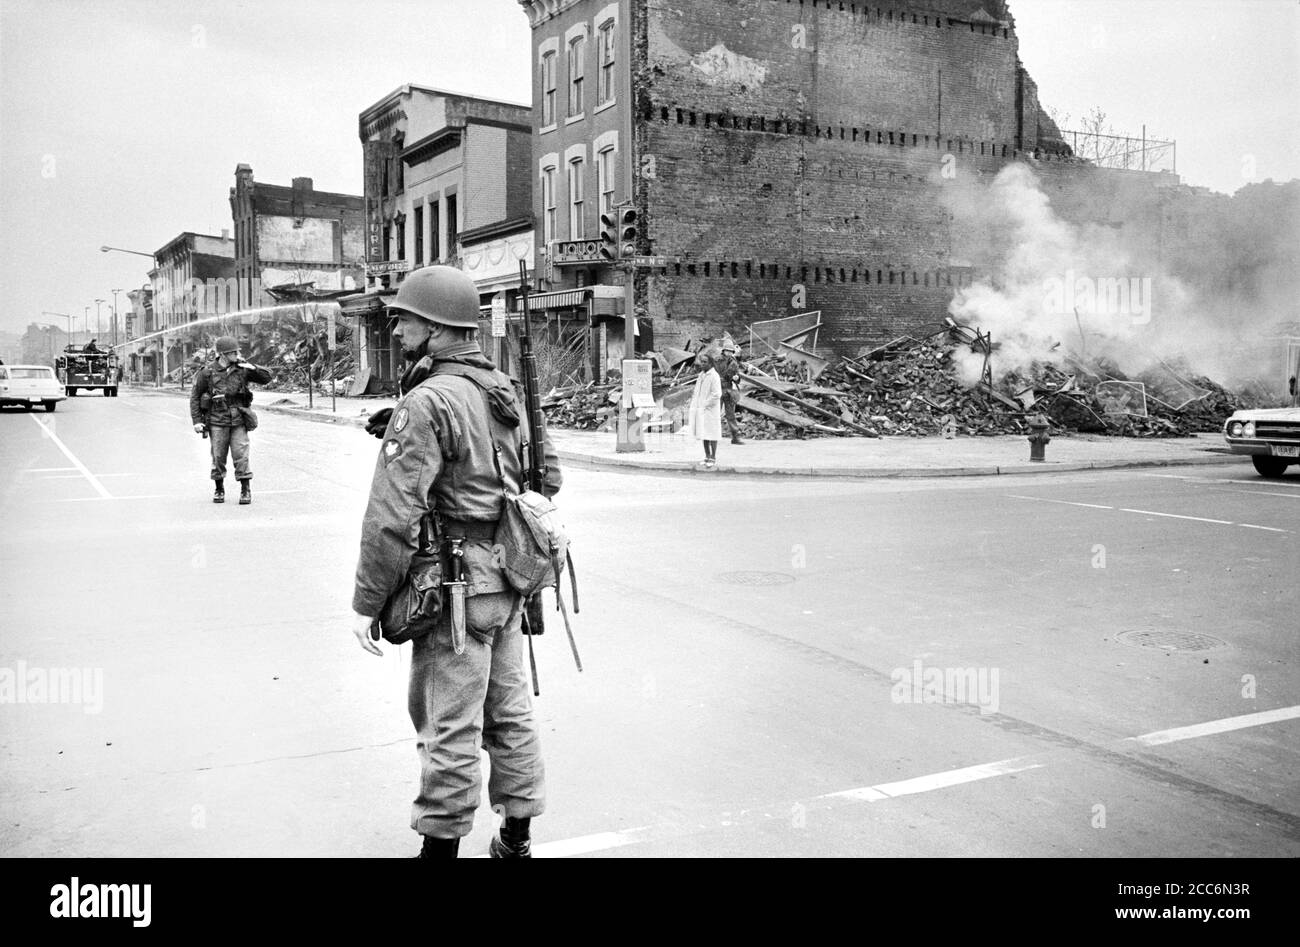 Garde debout du soldat des États-Unis près des ruines de bâtiments détruits par des émeutes à la suite de l'assassinat du Dr Martin Luther King Jr, 7th and N Street, N.W., Washington, D.C., États-Unis, Warren K. Leffler, 8 avril 1968 Banque D'Images